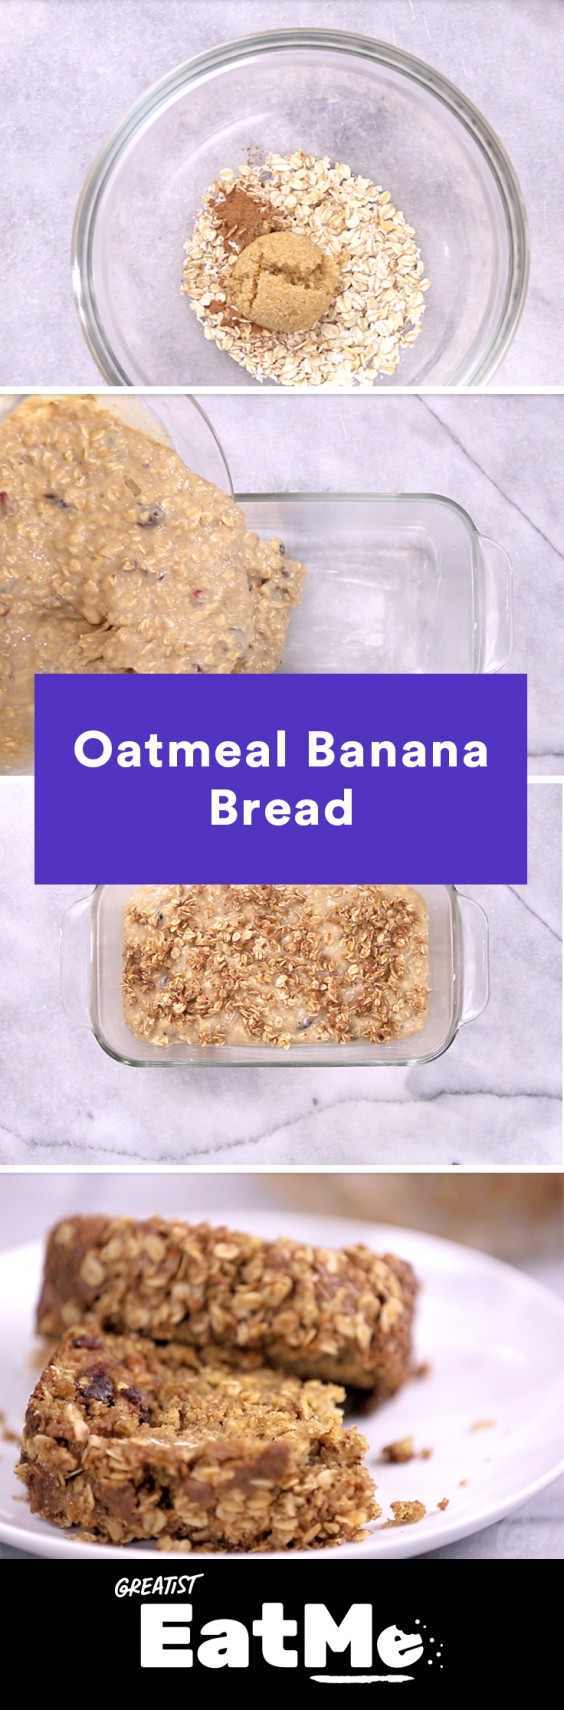 Eat Me Video: Oatmeal Banana Bread